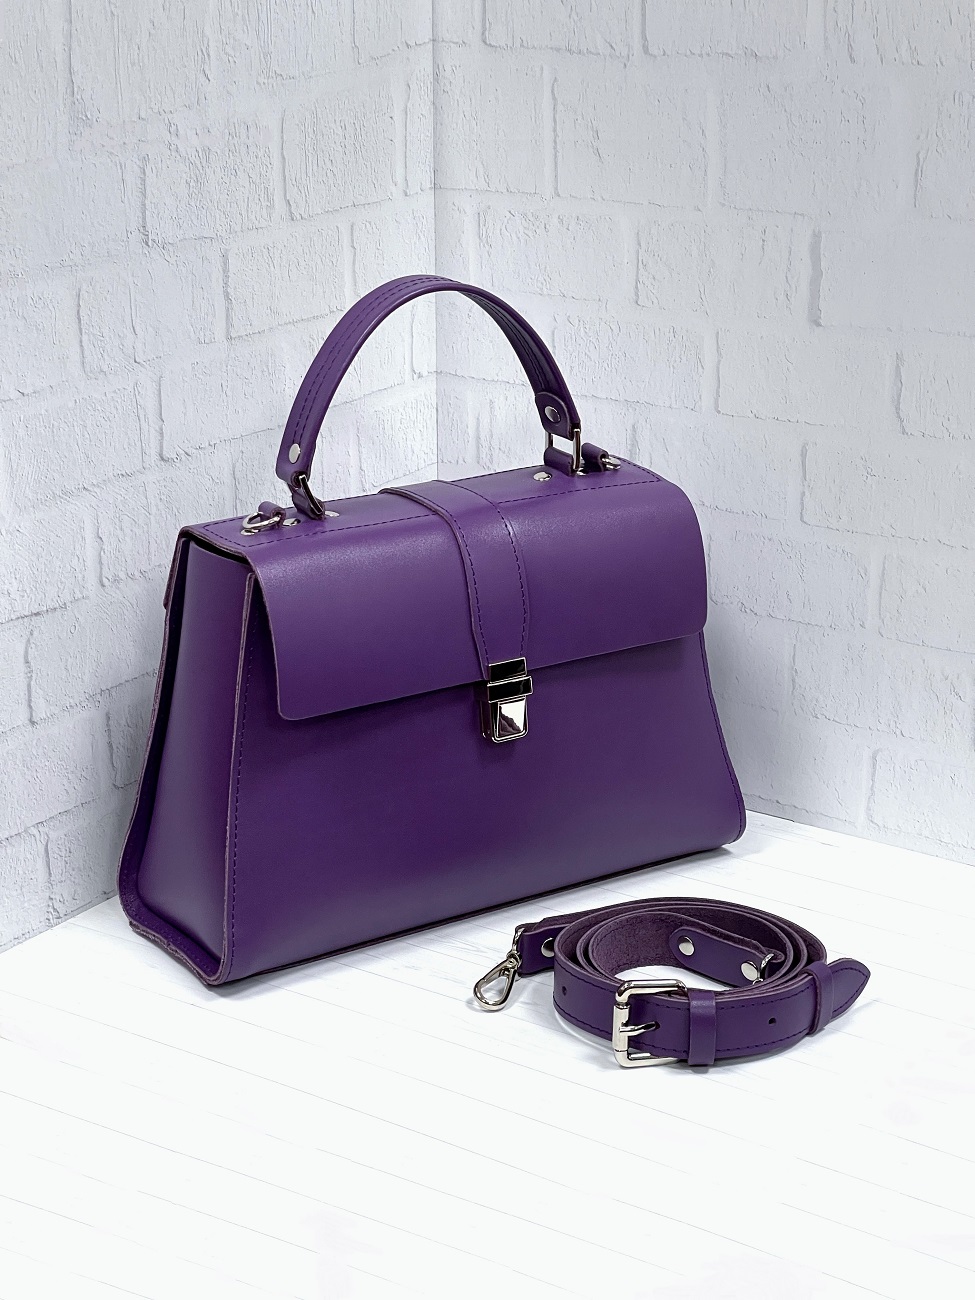 Женская сумка трапеция из натуральной кожи фиолетовая A023 purple